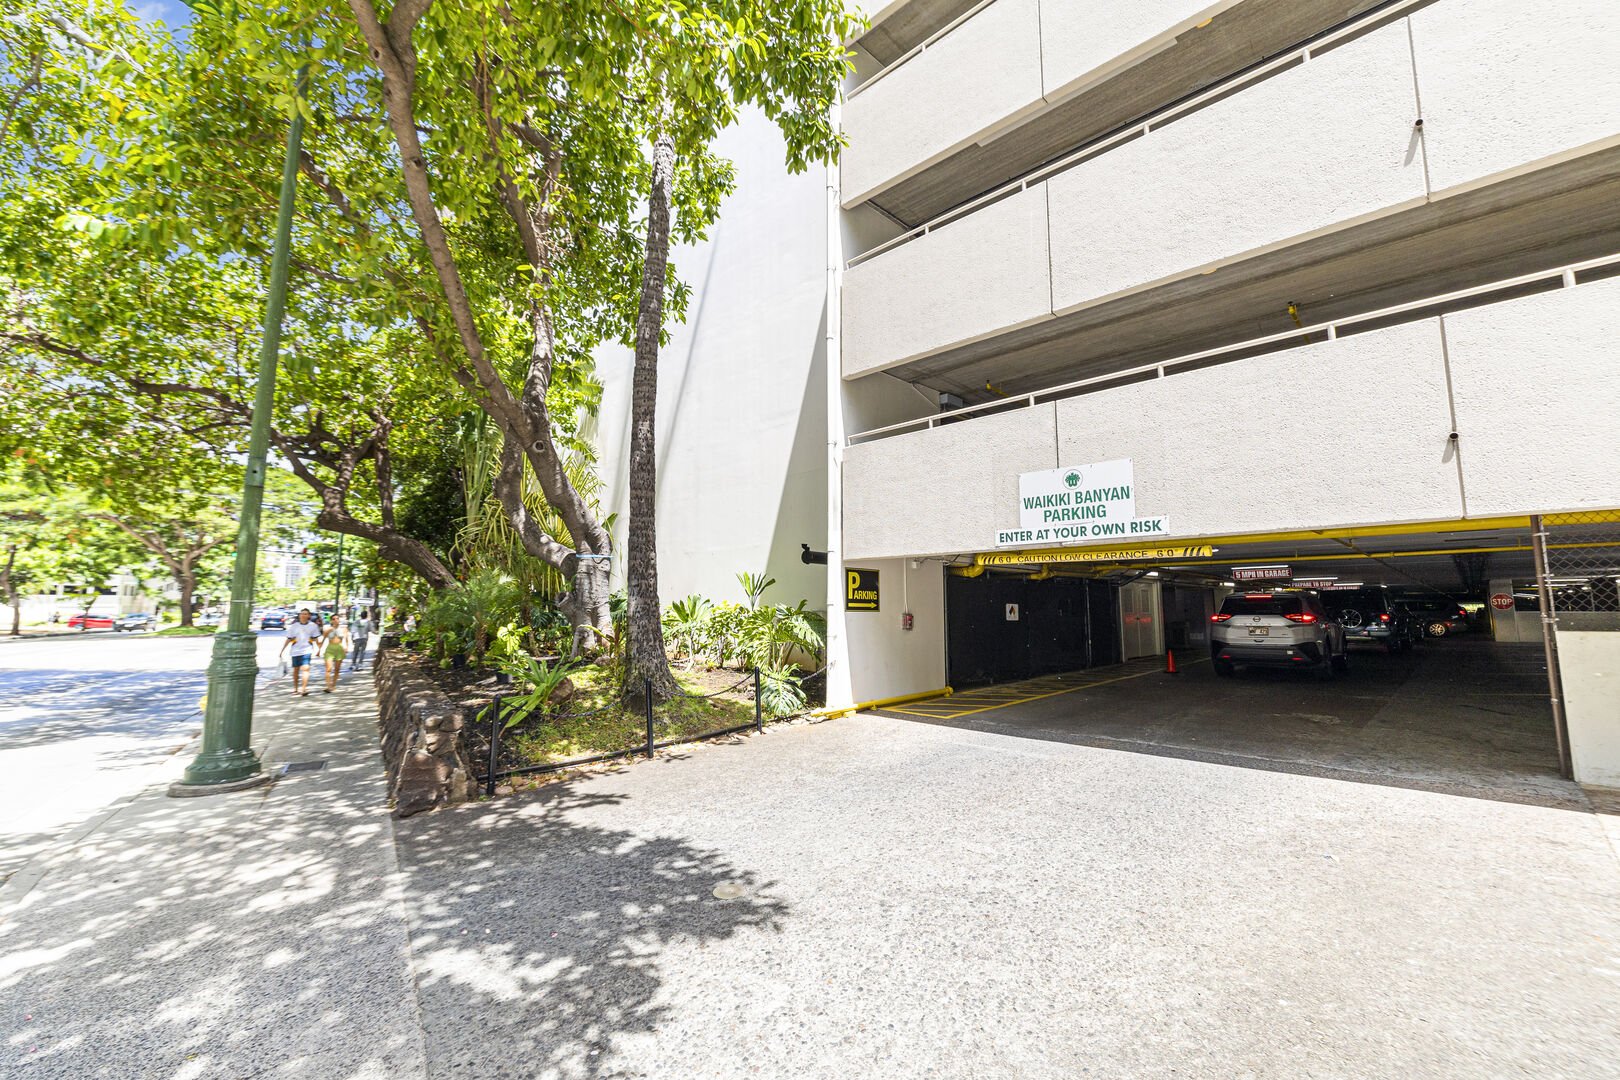 Waikiki Banyan Parking entrance